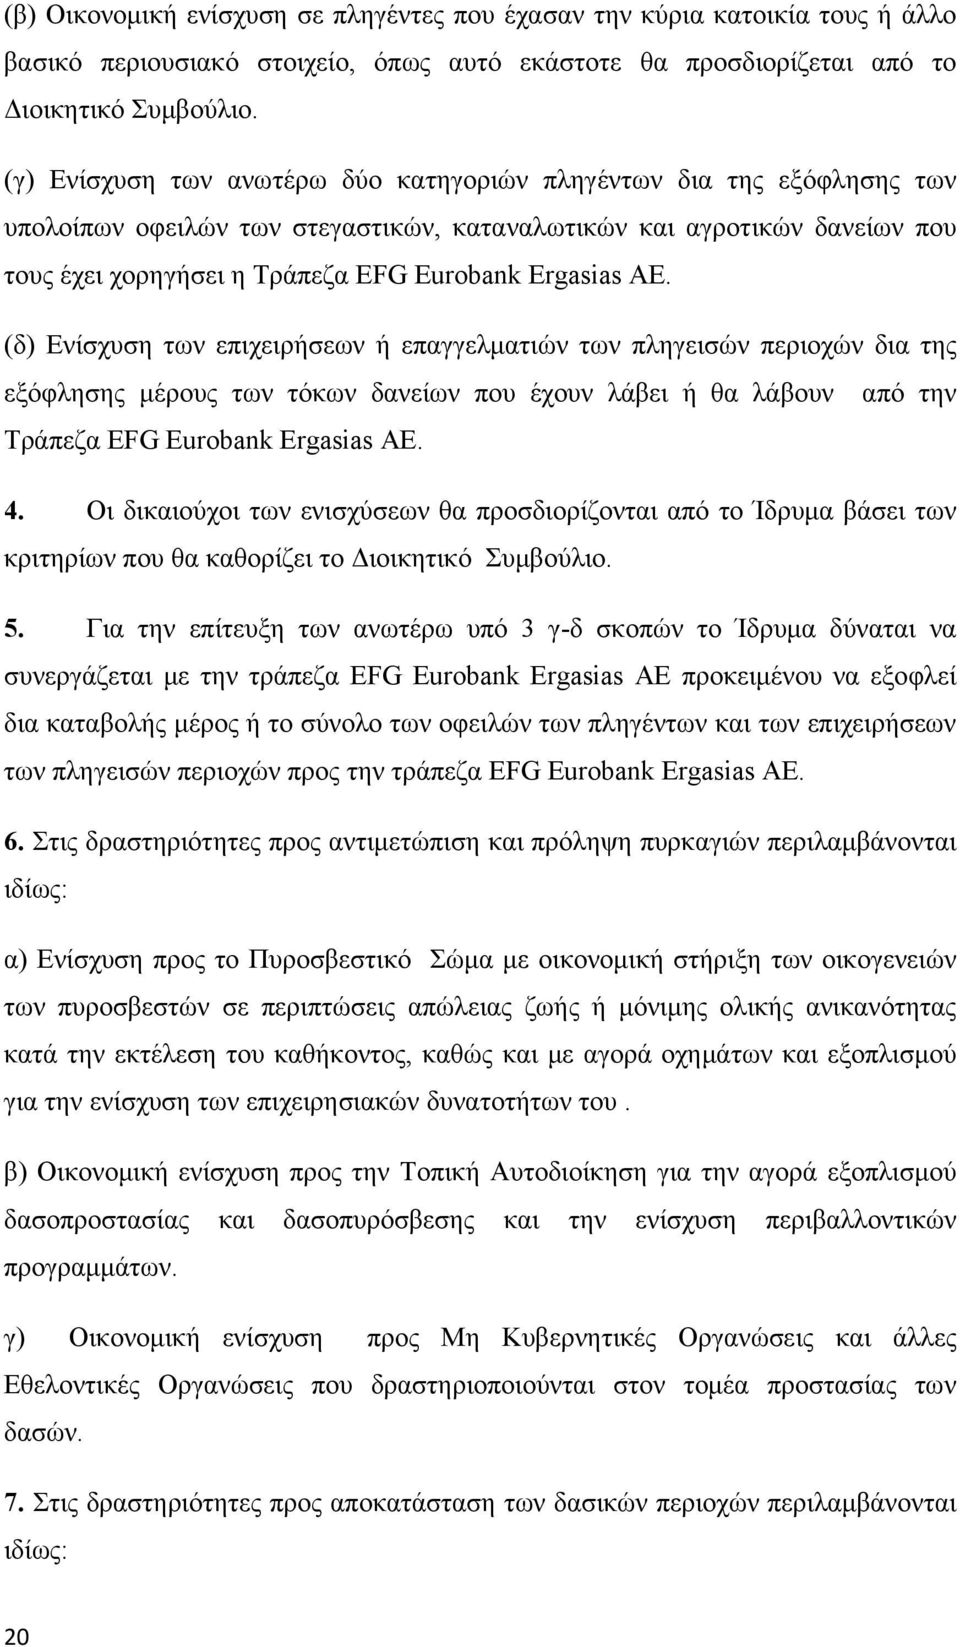 ΑΕ. (δ) Ενίσχυση των επιχειρήσεων ή επαγγελματιών των πληγεισών περιοχών δια της εξόφλησης μέρους των τόκων δανείων που έχουν λάβει ή θα λάβουν από την Τράπεζα EFG Eurobank Ergasias ΑΕ. 4.